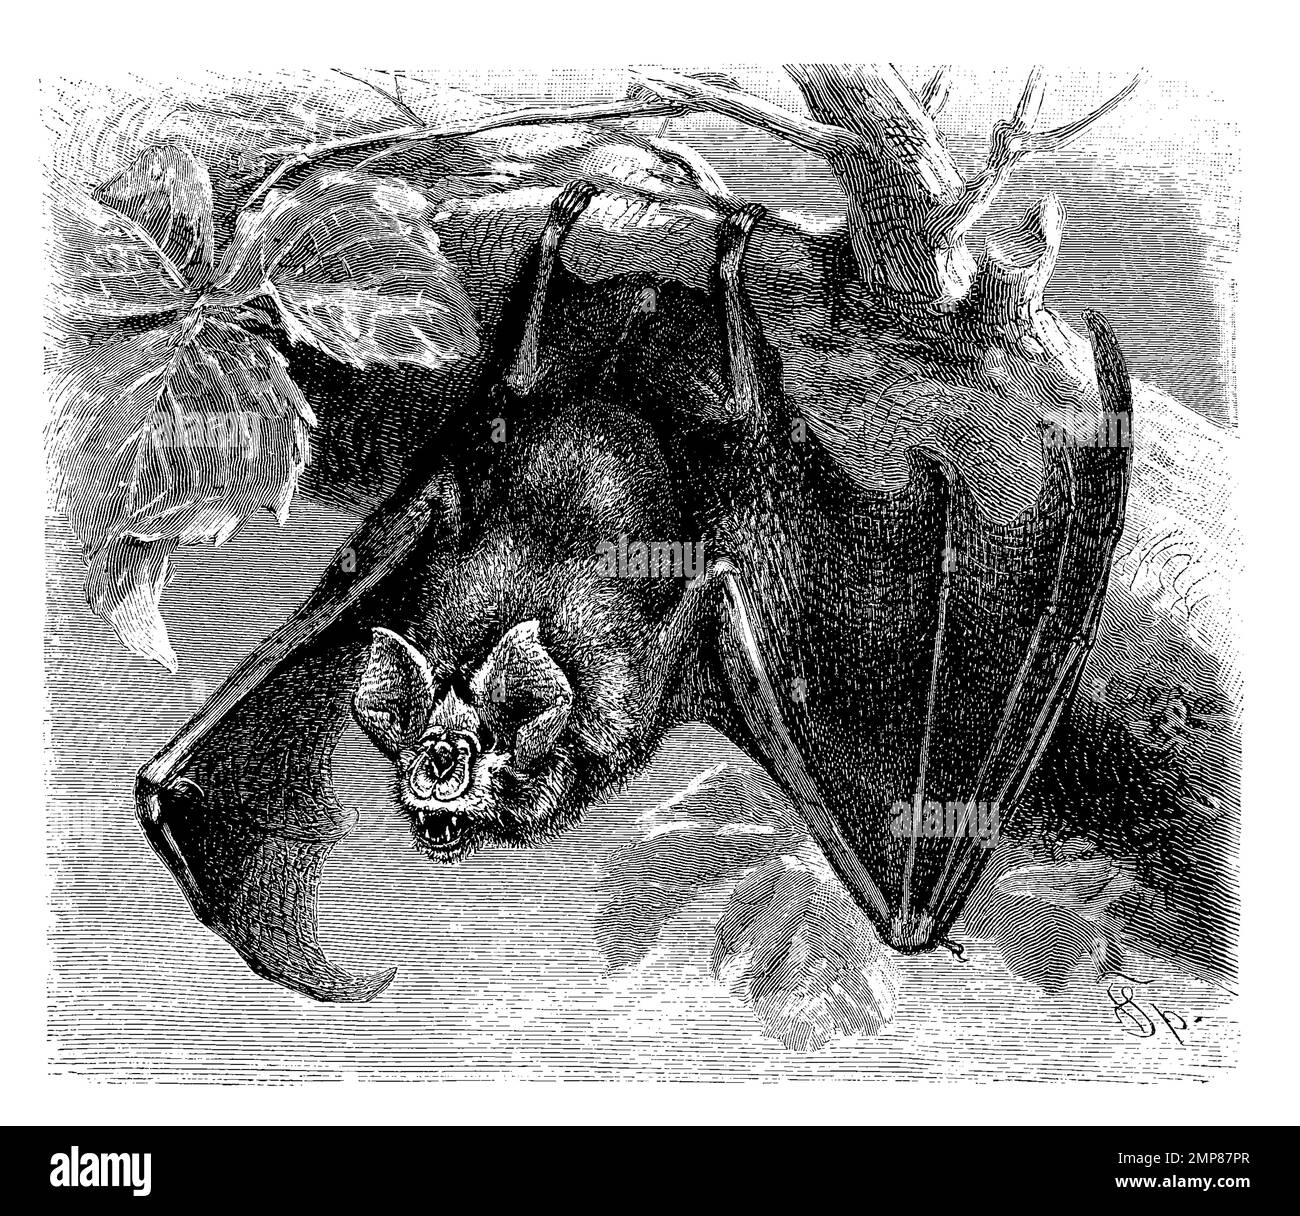 Große Hufeisennase, Rhinolophus ferrumequinum, eine Fledermausart, ist mit einer Länge von maximal sieben Zentimetern und einer Flügelspannweite von bis zu 40 Zentimetern die größte europäische Hufeisennasenart, digital restaurierte Reproduktion einer Originalvorlage aus dem 19. Jahrhundert, genaues Originaldatum nicht bekannt Stock Photo